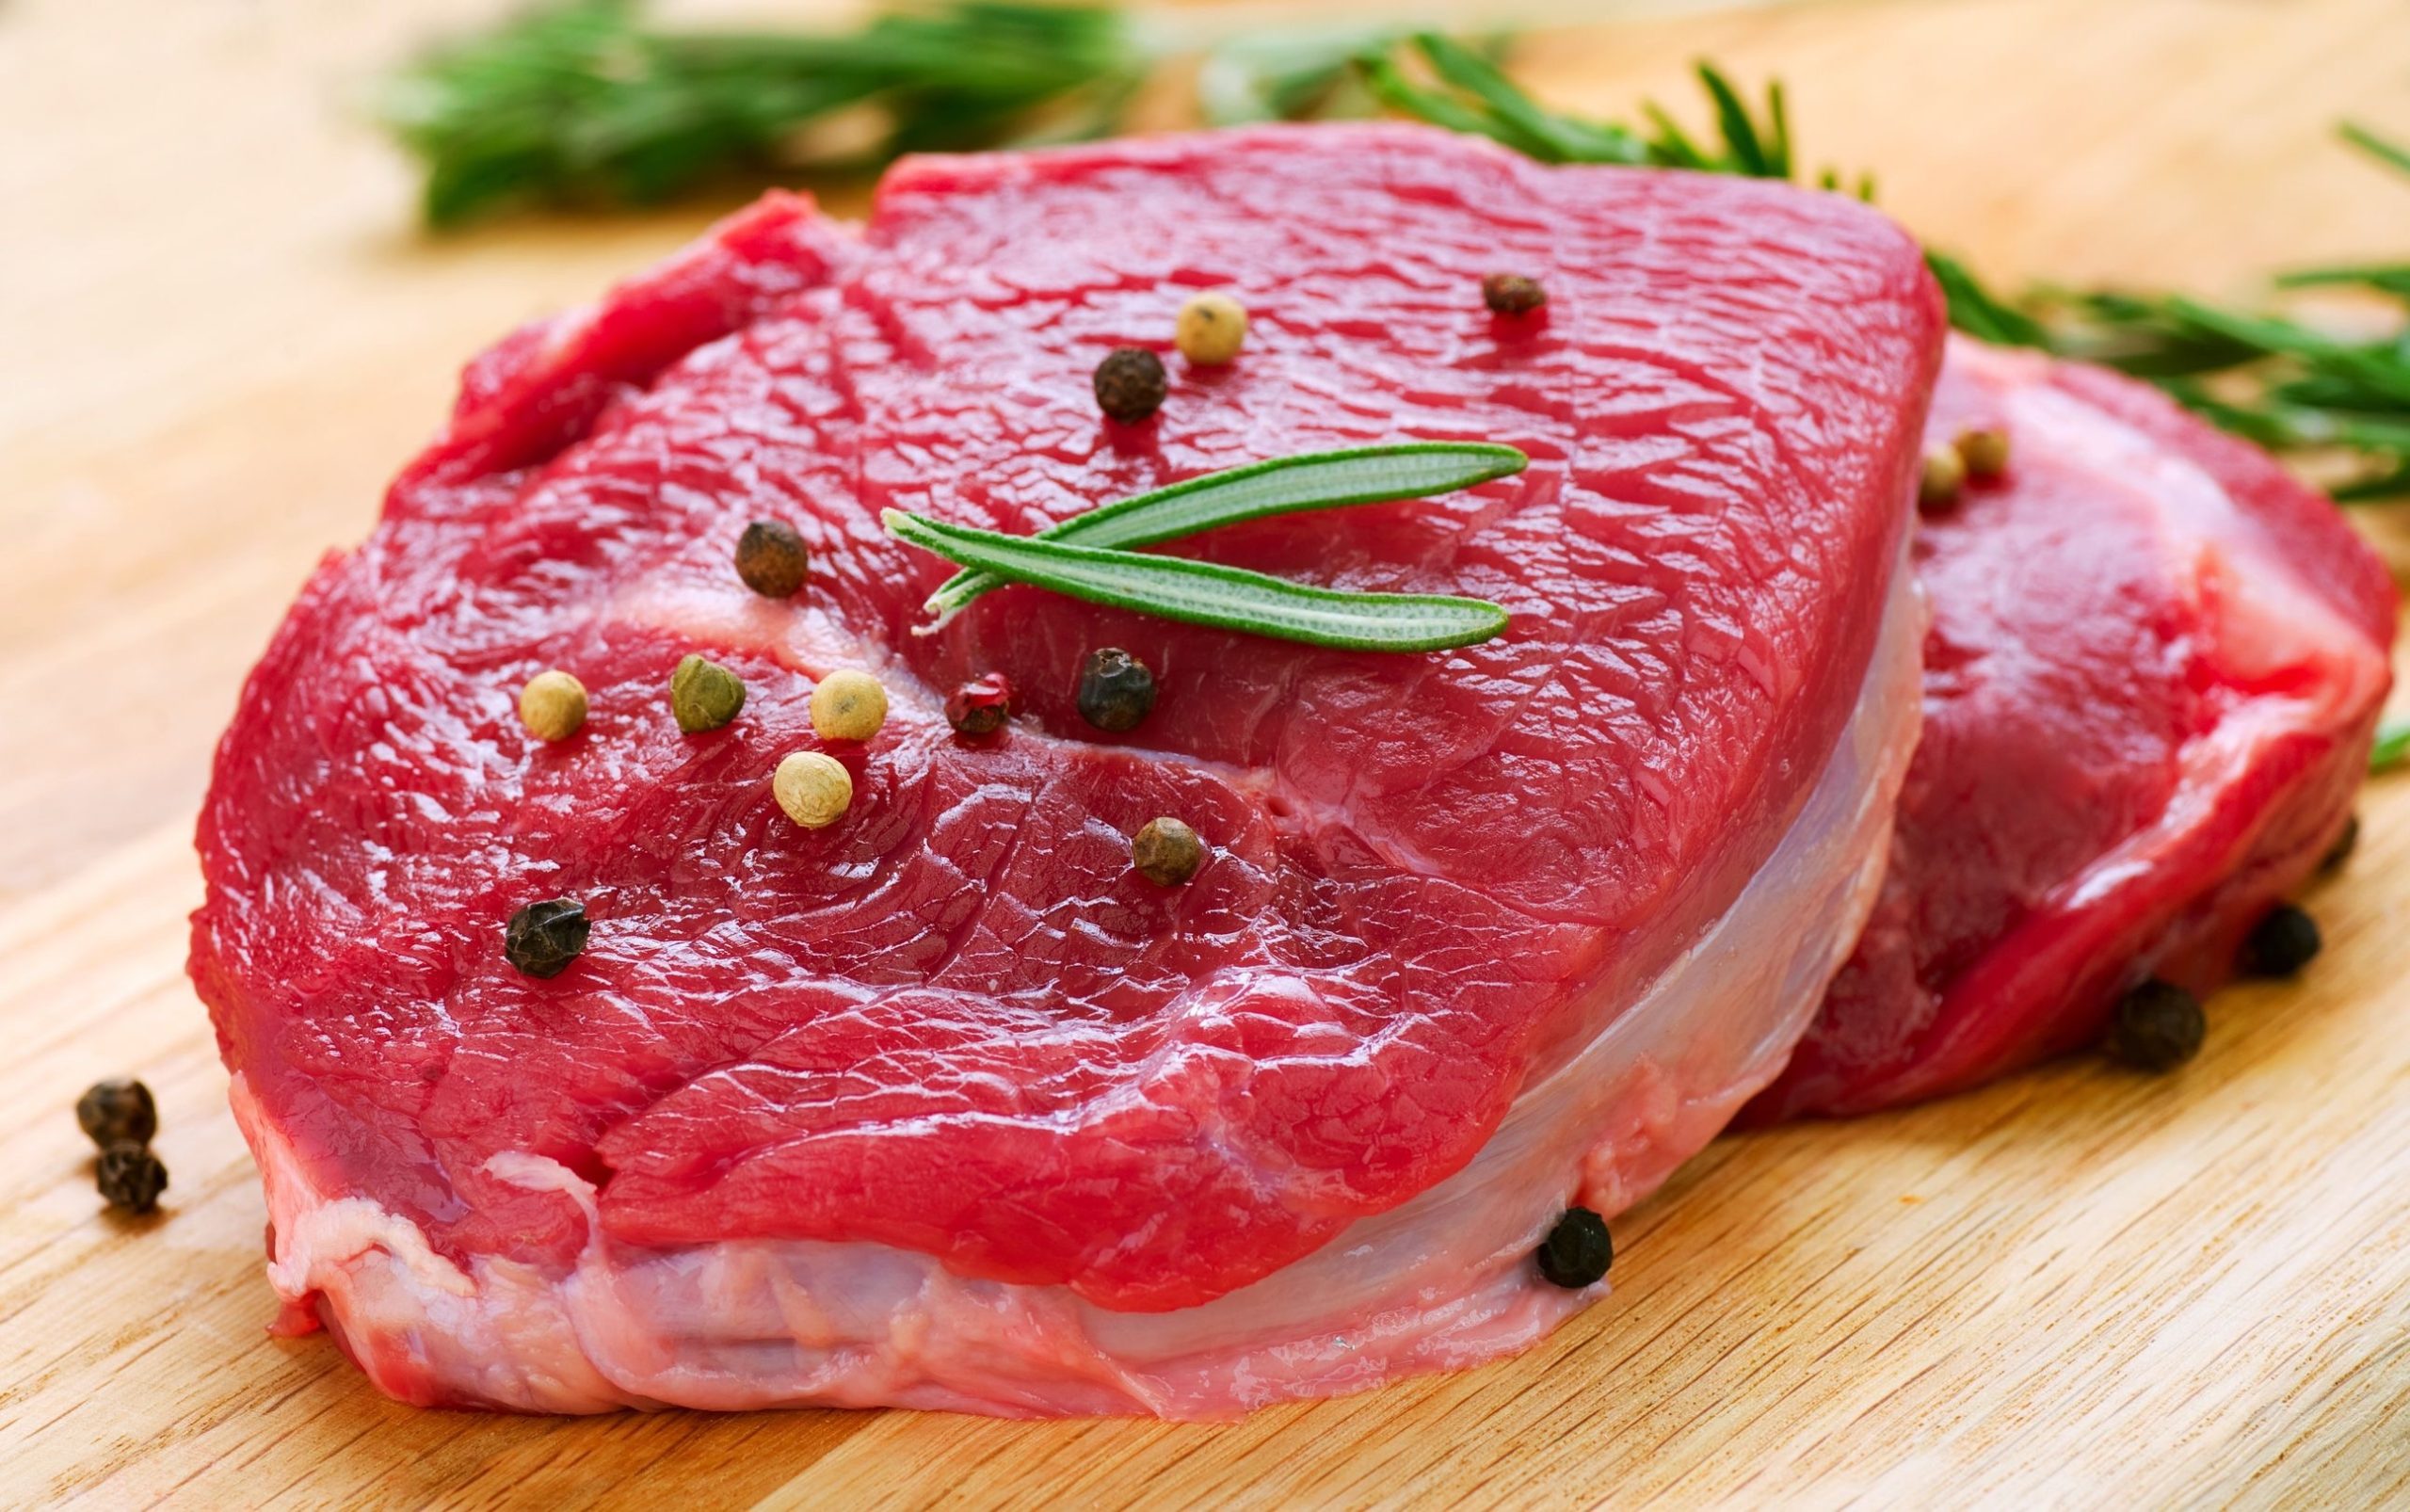 سعر اللحوم بعد زيادة سعر السولار 